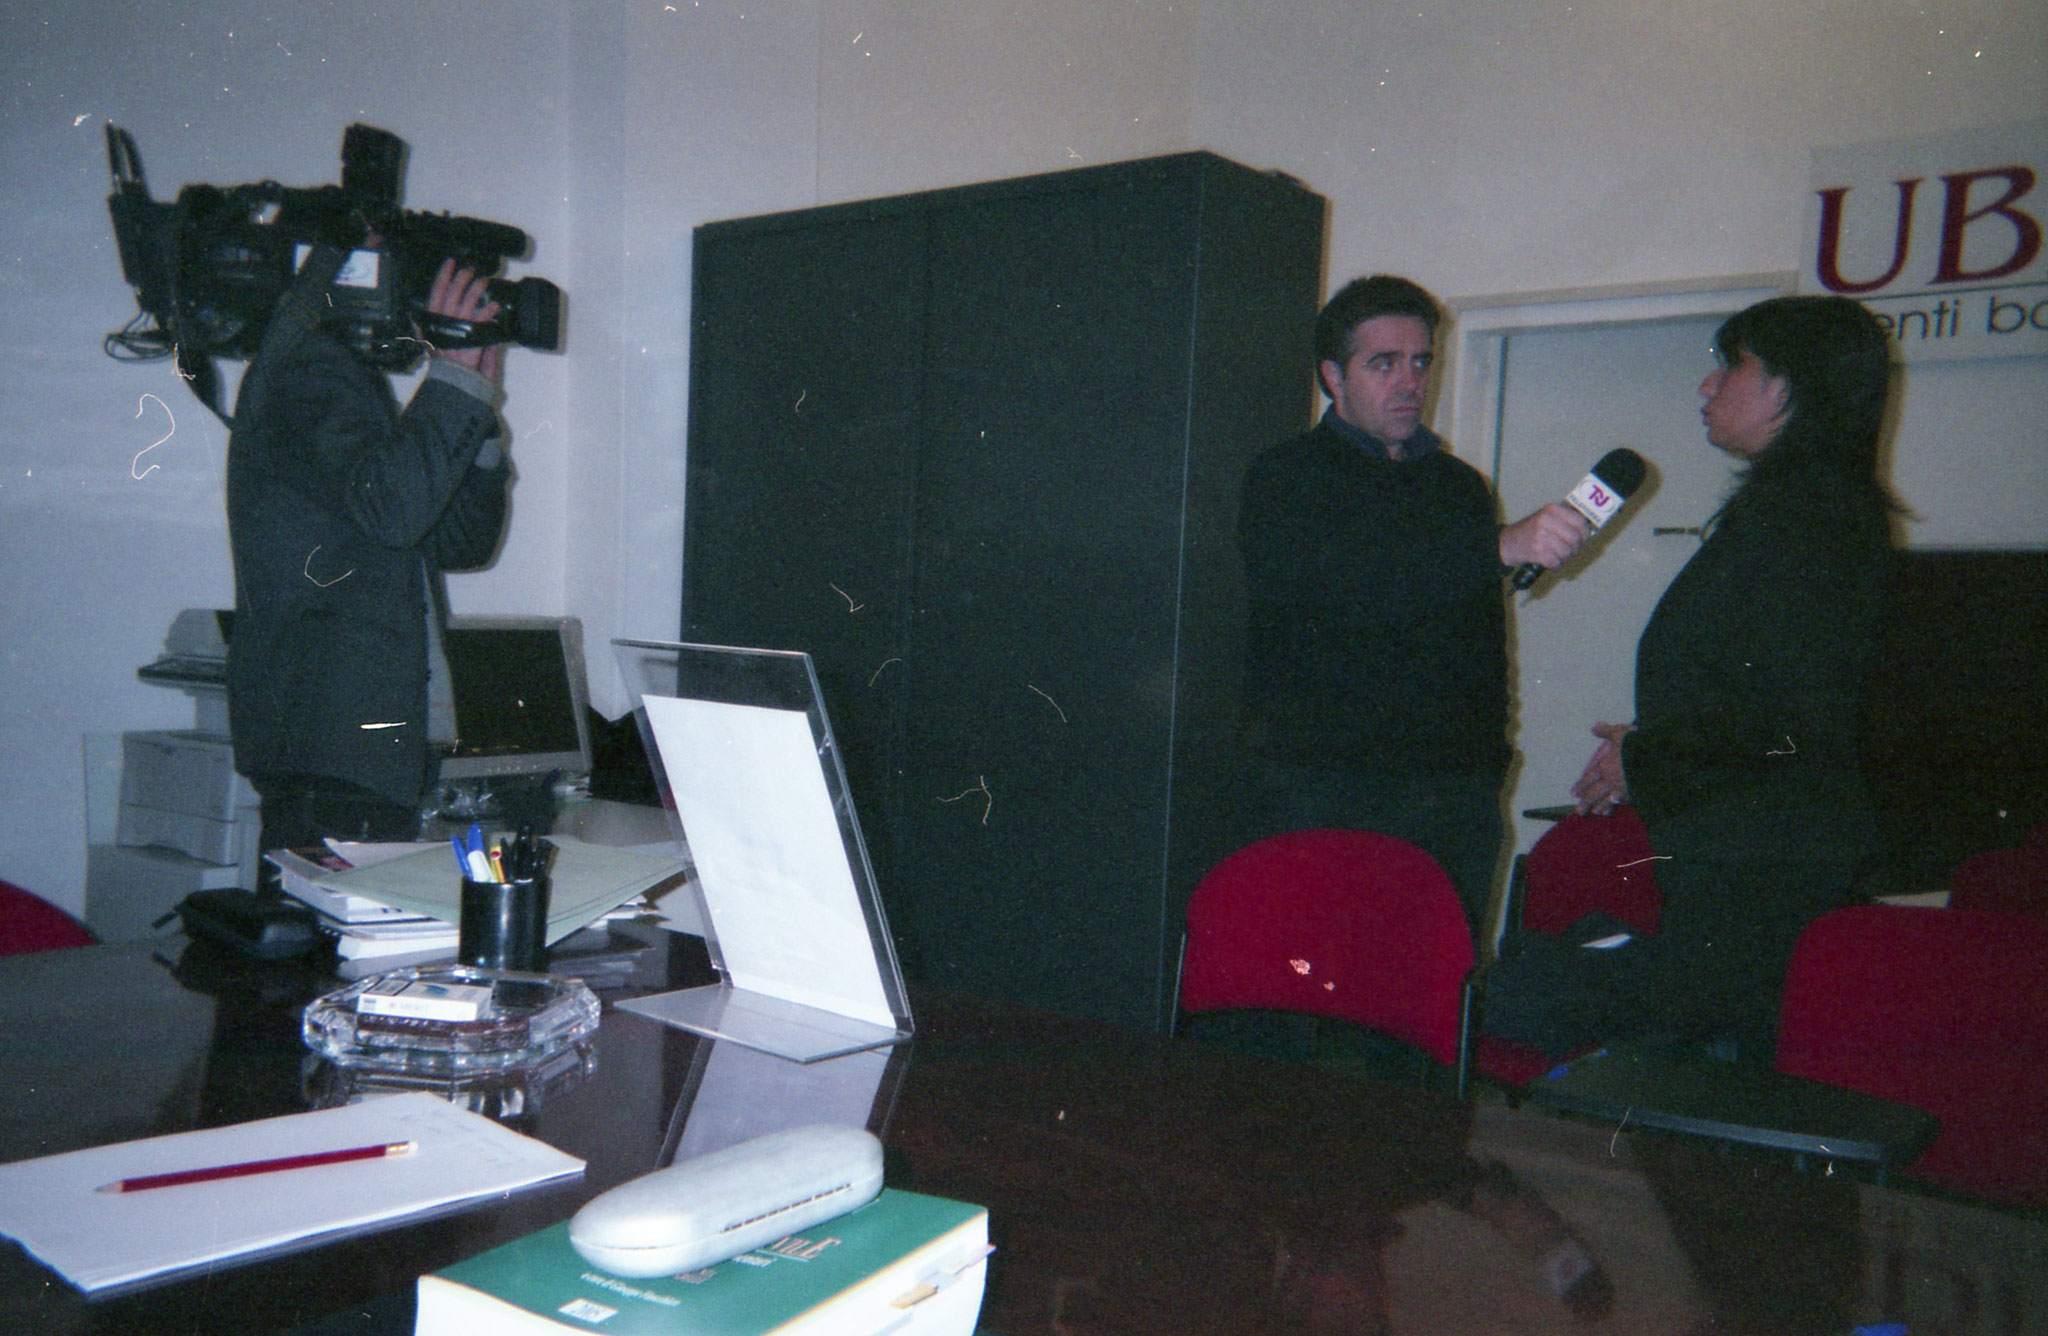 Beppe Stallone, giornalista di Telenorba, presso la sede dell'UBF